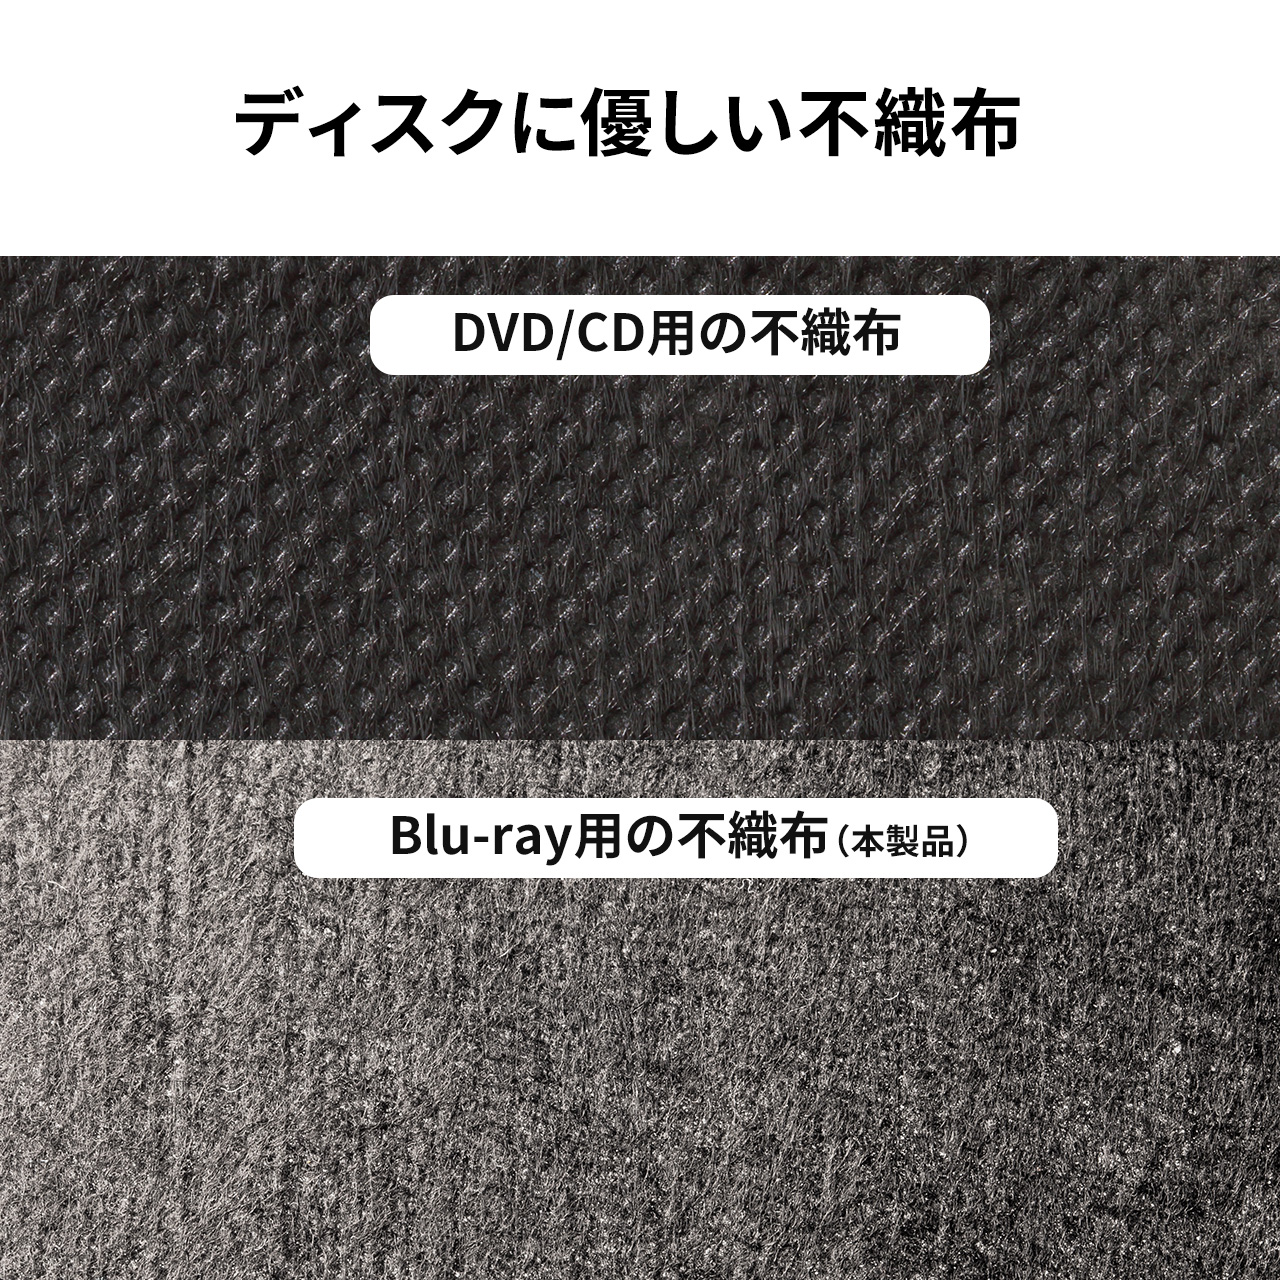 ブルーレイケース 収納 DVDケース CDケース キャリングケース 120枚収納 Blu-ray 保管 BD DVD CD ファイルケース セミハードケース 大容量 おしゃれ 200-FCD071